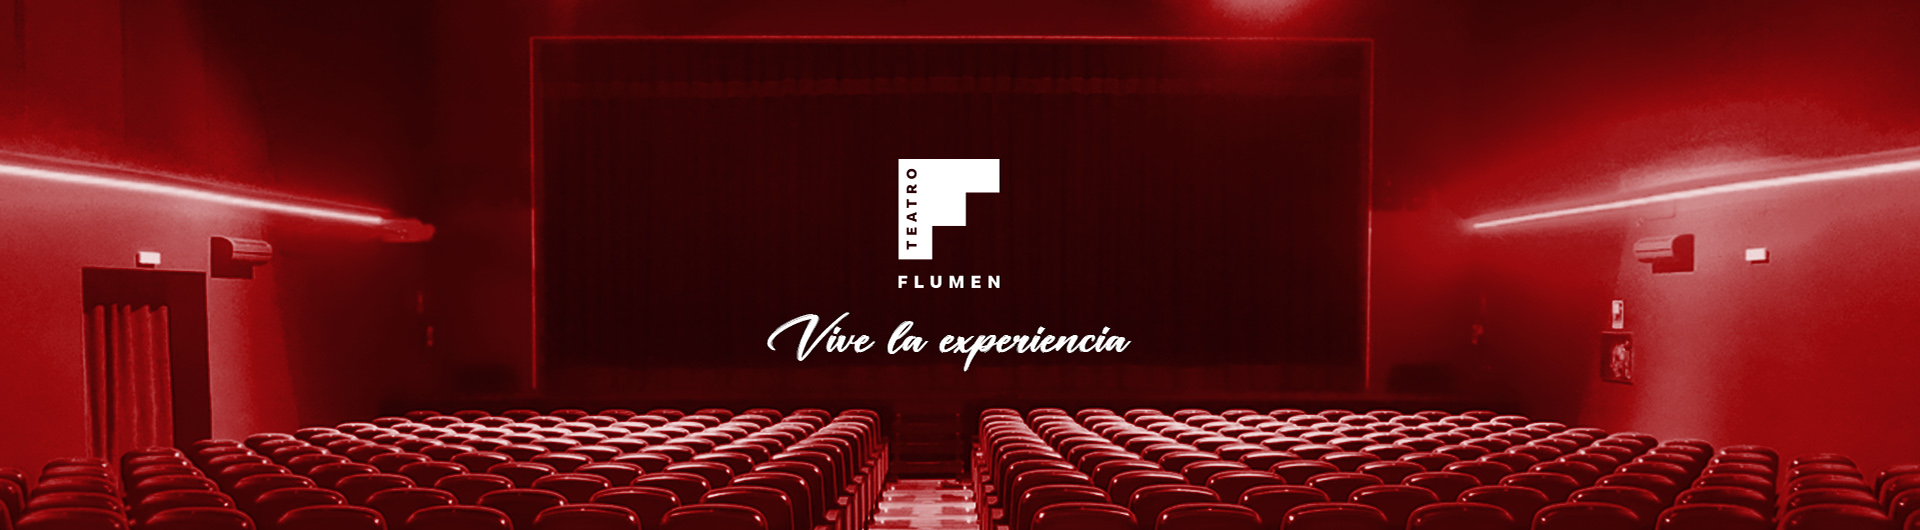 Teatro Flumen - Tu teatro en Valencia